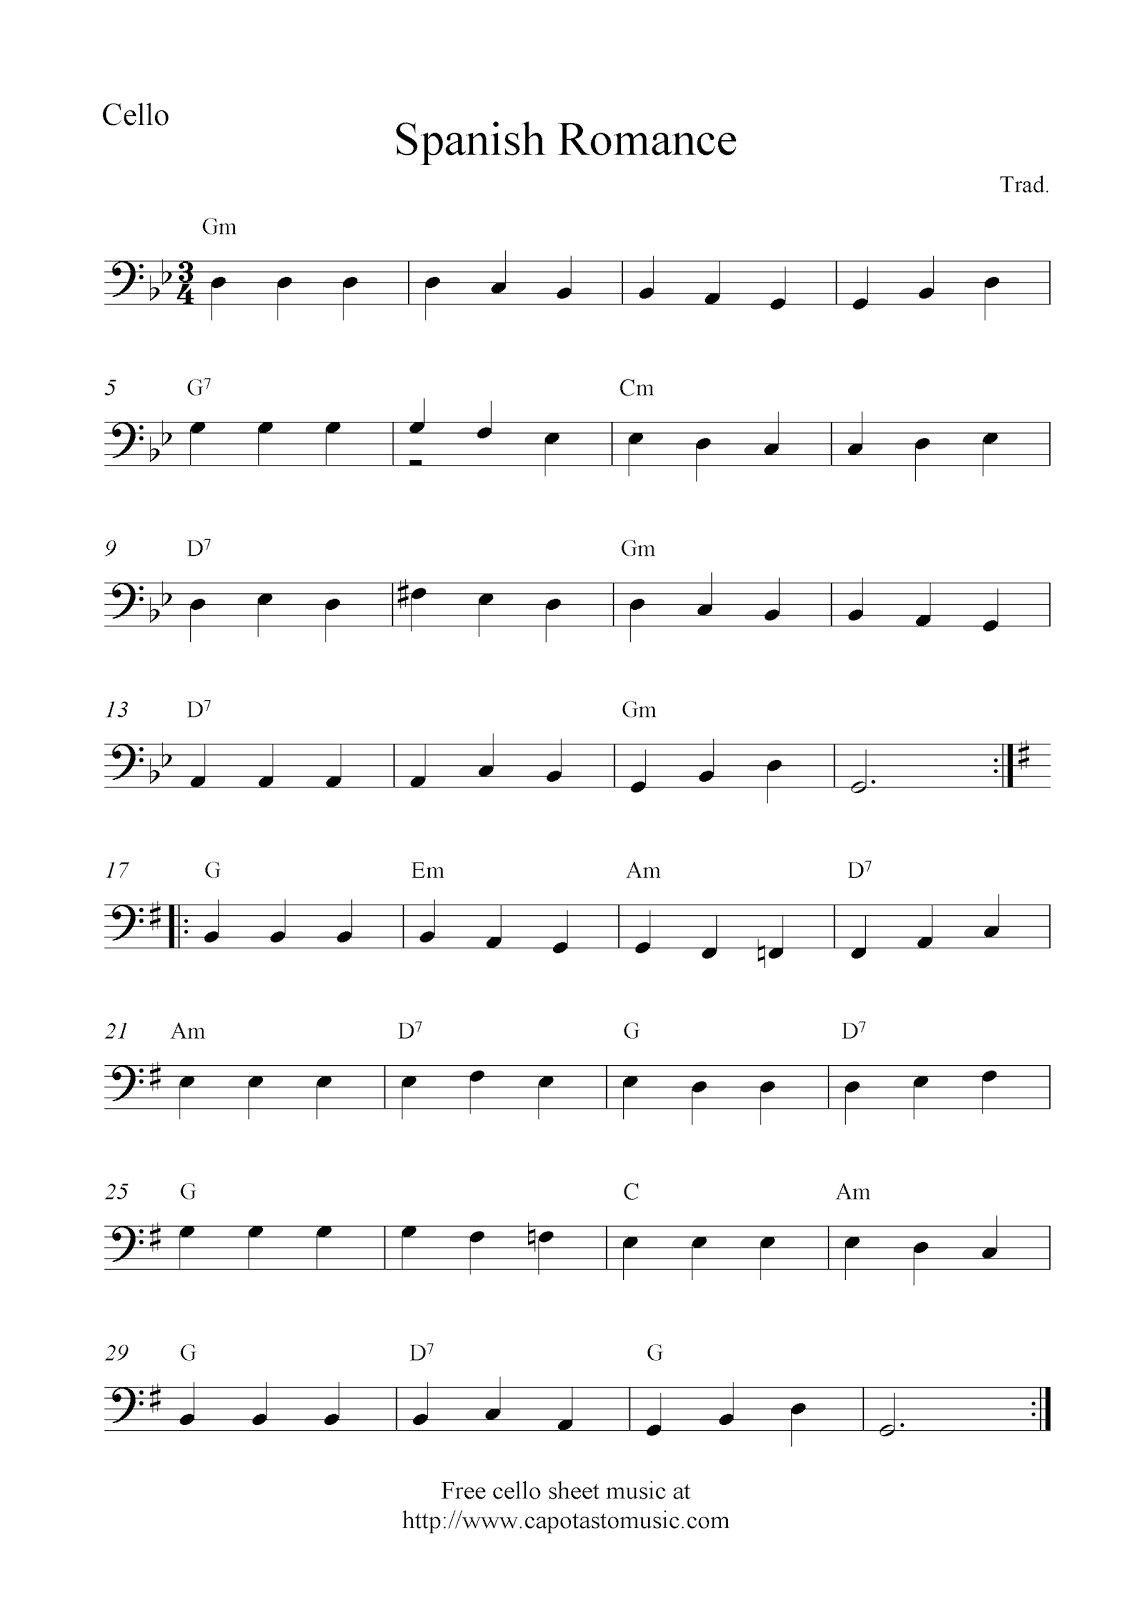 cello-music-notes